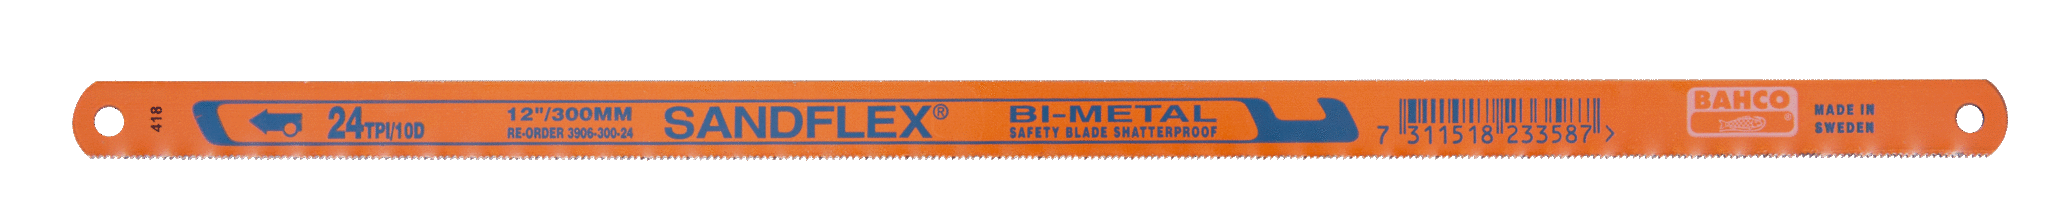 Биметаллические ножовочные полотна SANDFLEX®. Новое биметаллическое полотно SANDFLEX с повышеным содержанием кoбальта BAHCO 3906-300-18-2P